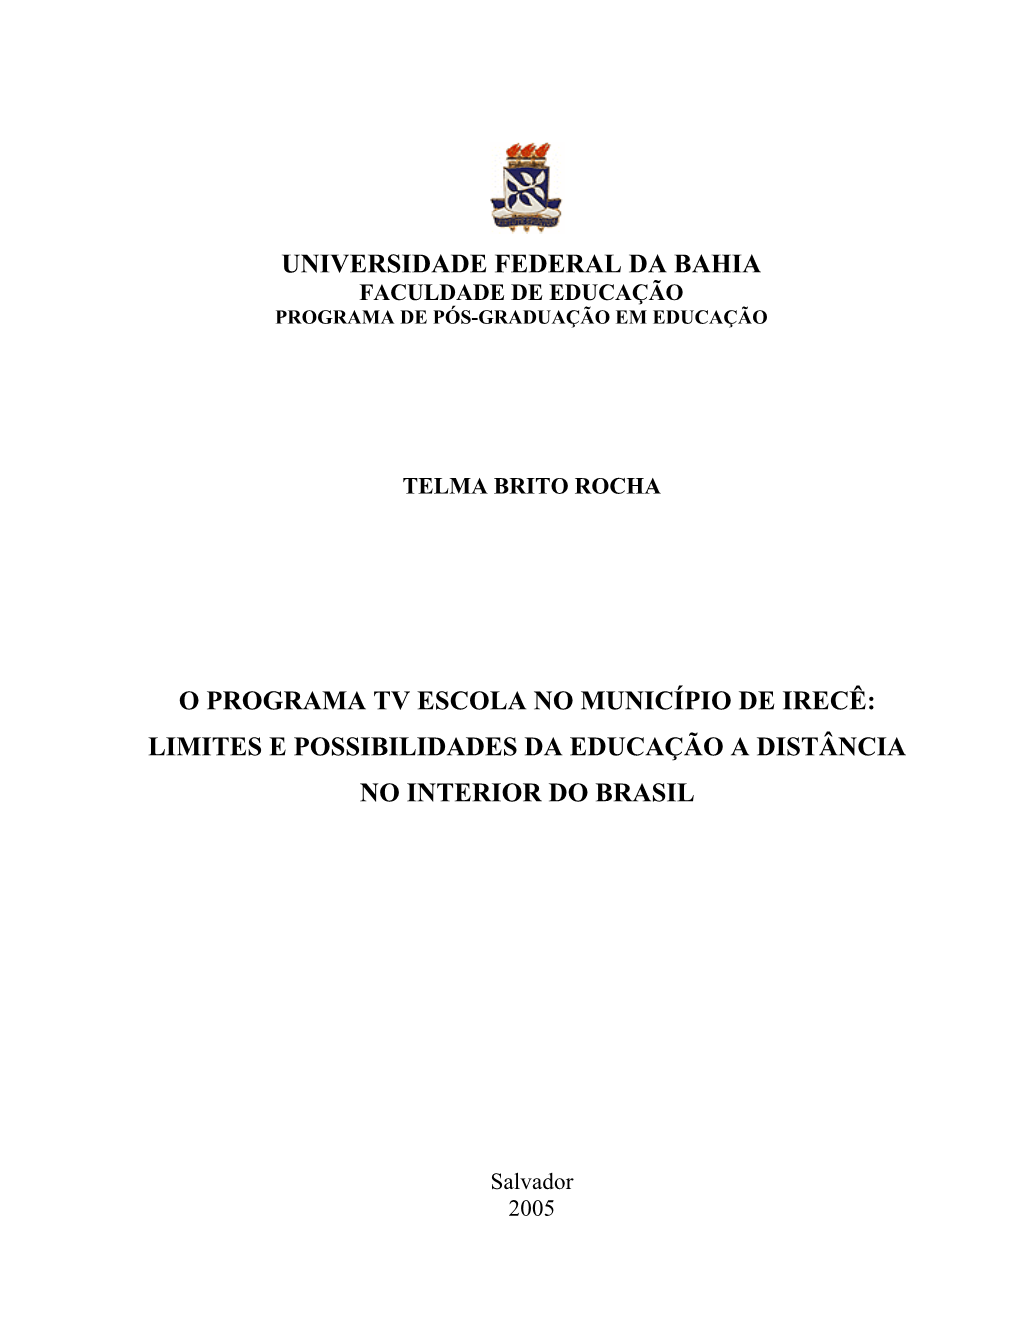 Universidade Federal Da Bahia O Programa Tv Escola No Município De Irecê: Limites E Possibilidades Da Educação a Distância